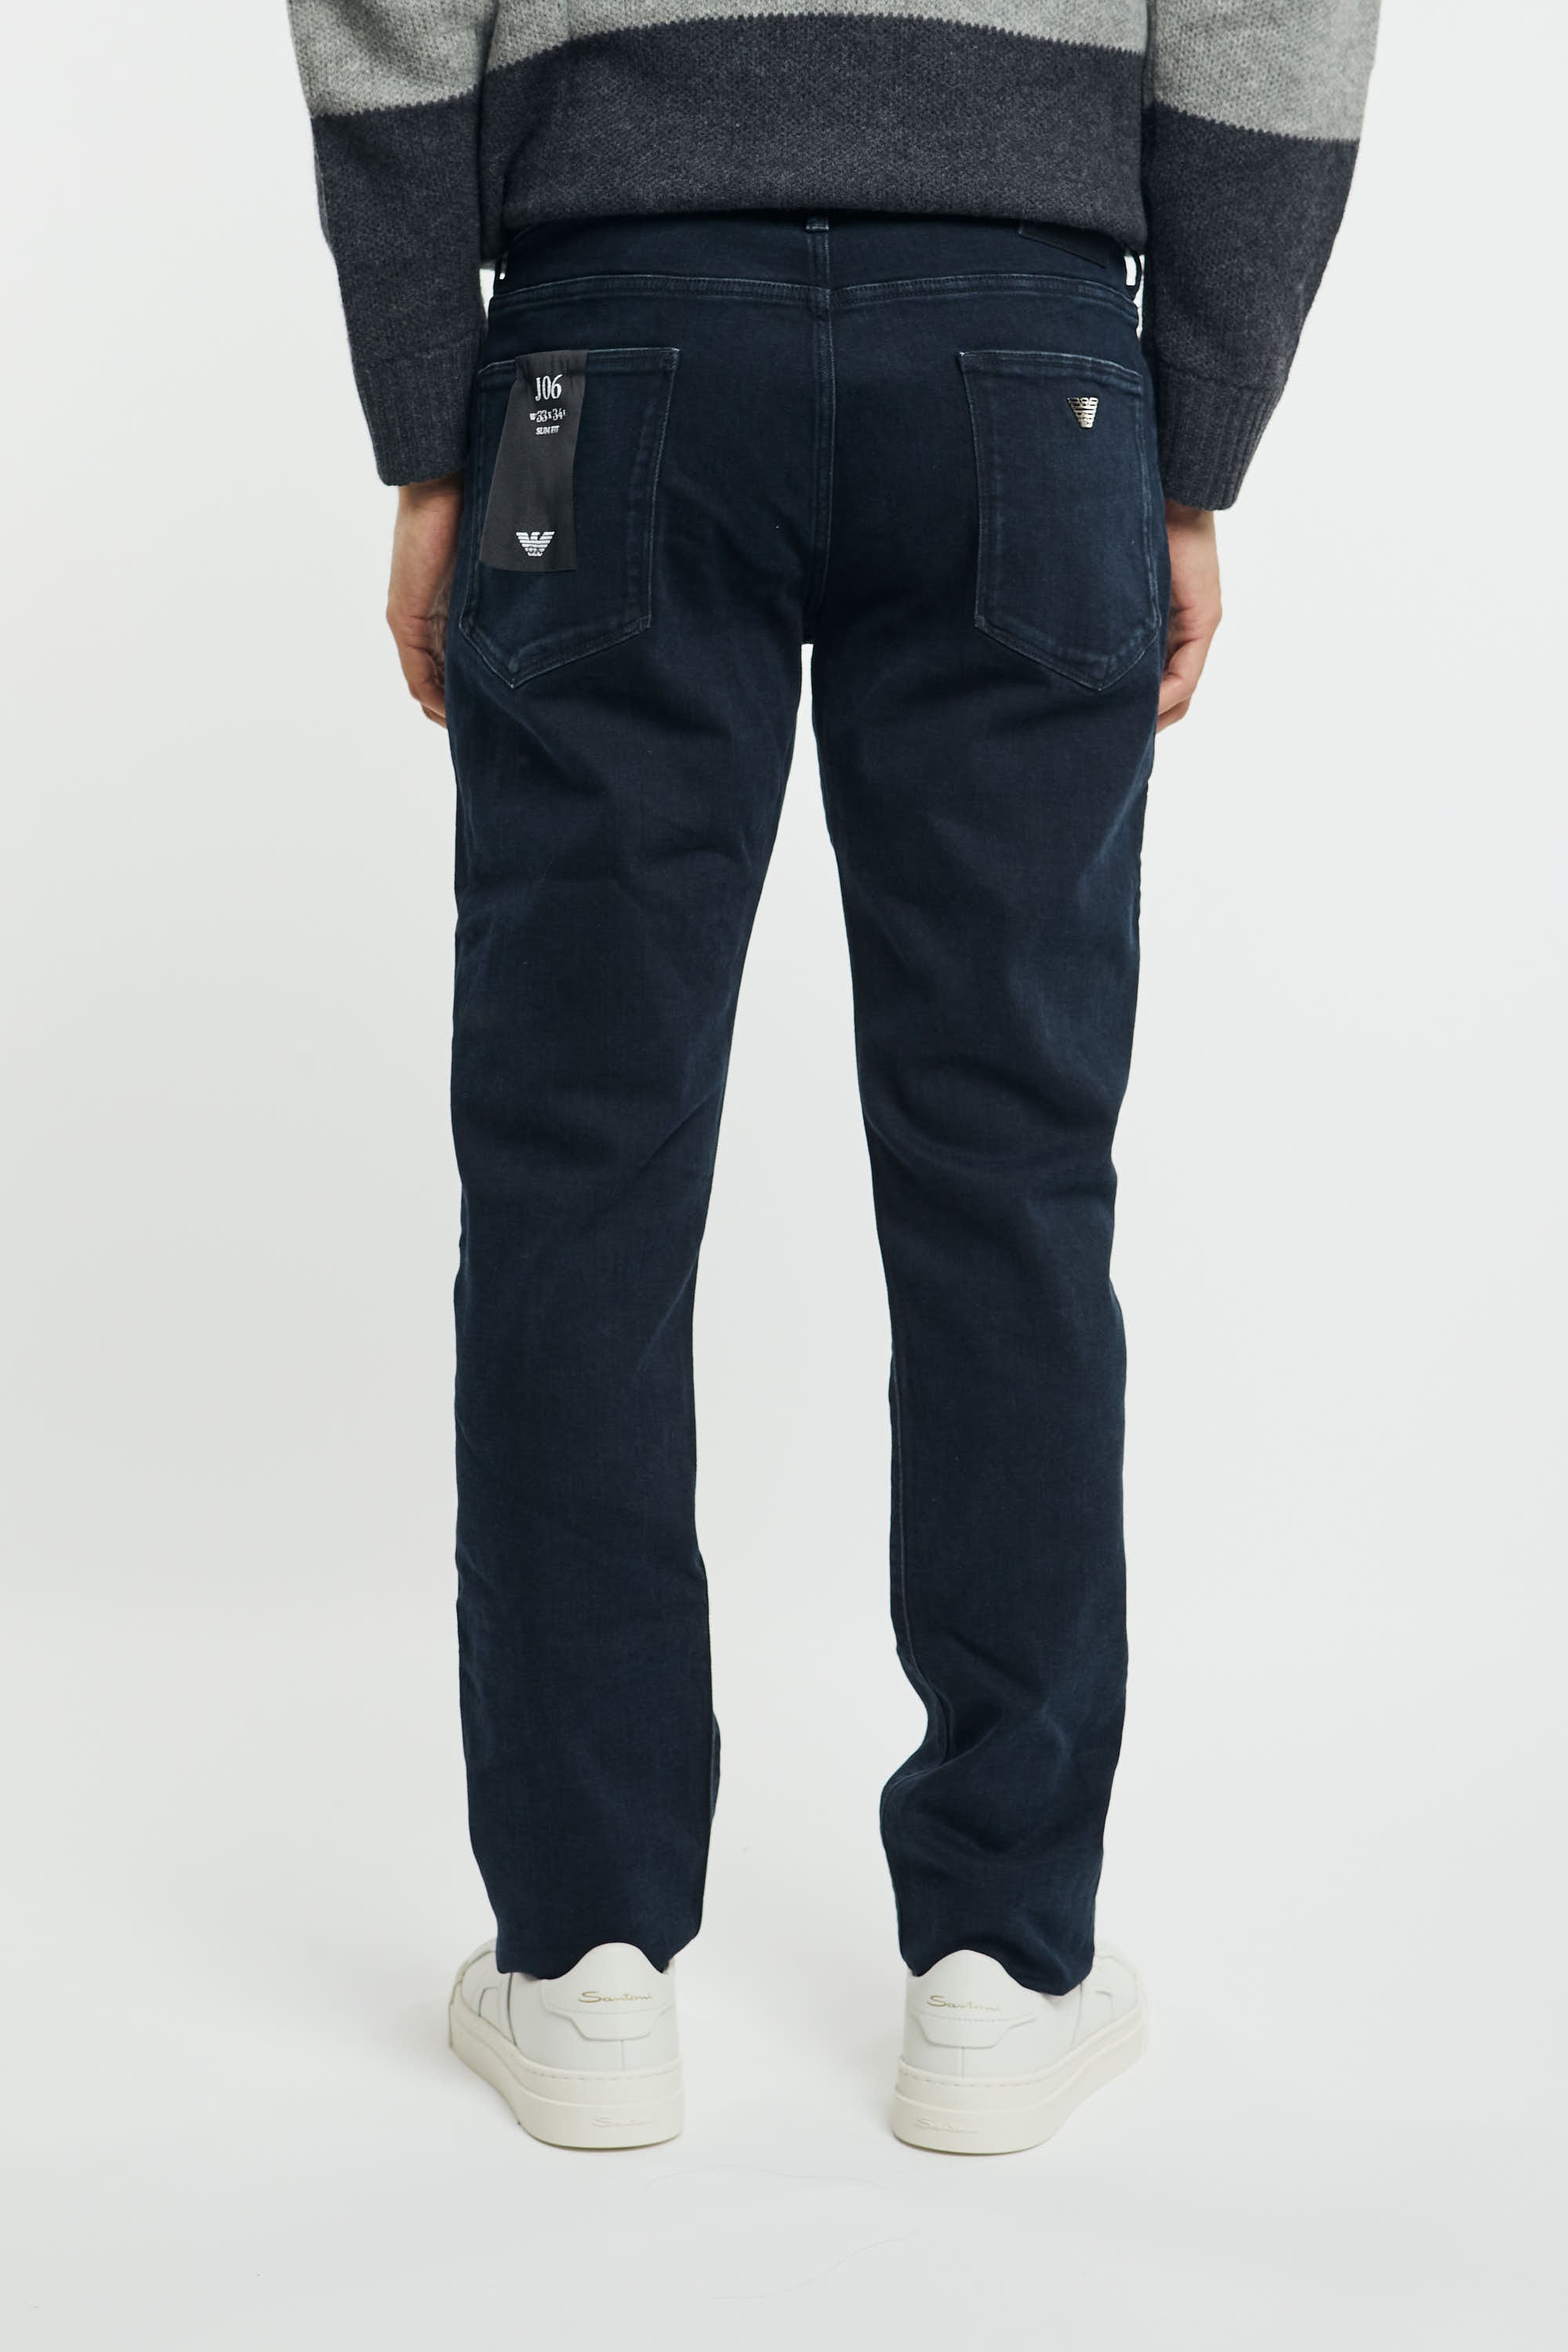 Jeans J06 slim fit in twill comfort denim-6